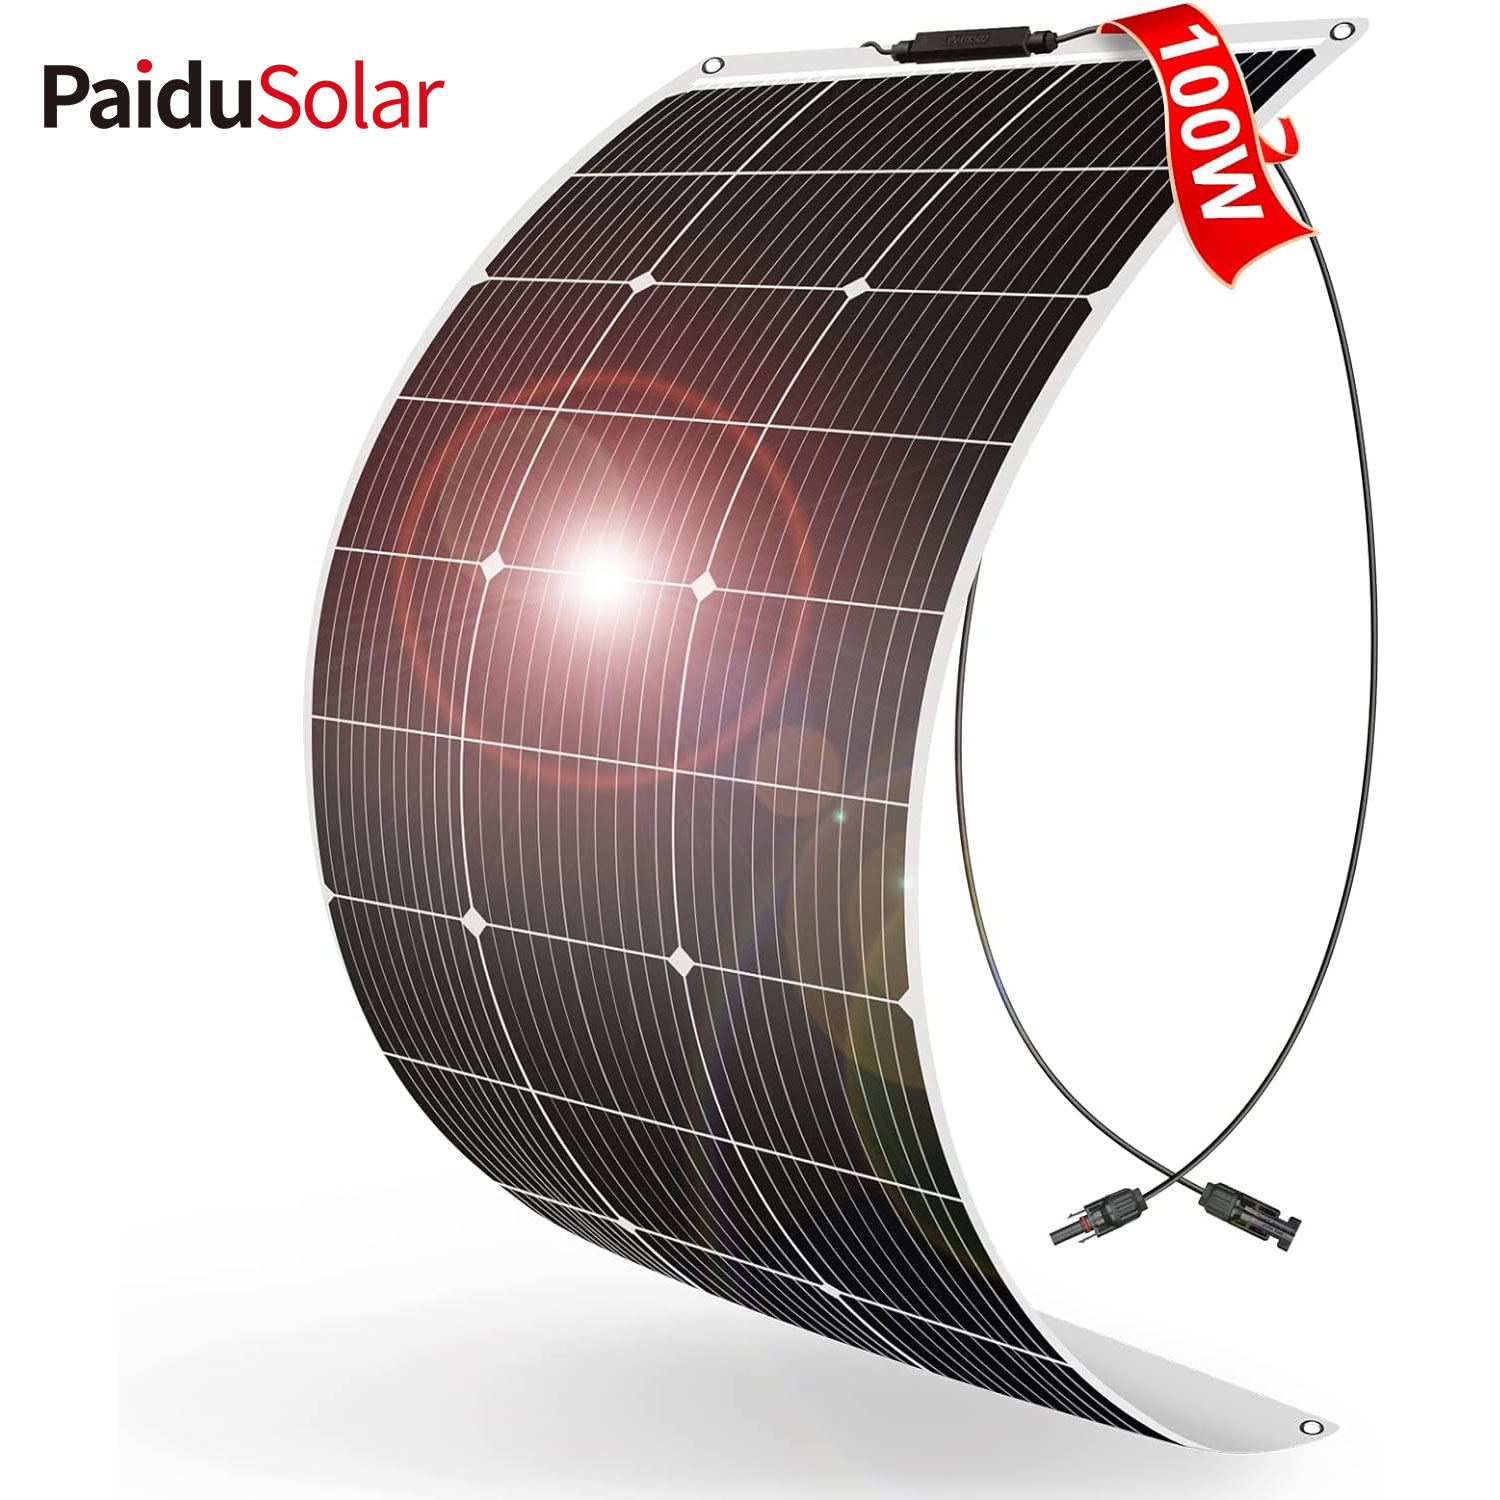 PaiduSolar Panel solar semiflexible flexible de 100 W y 12 V para caravana, barco, caravana, remolque